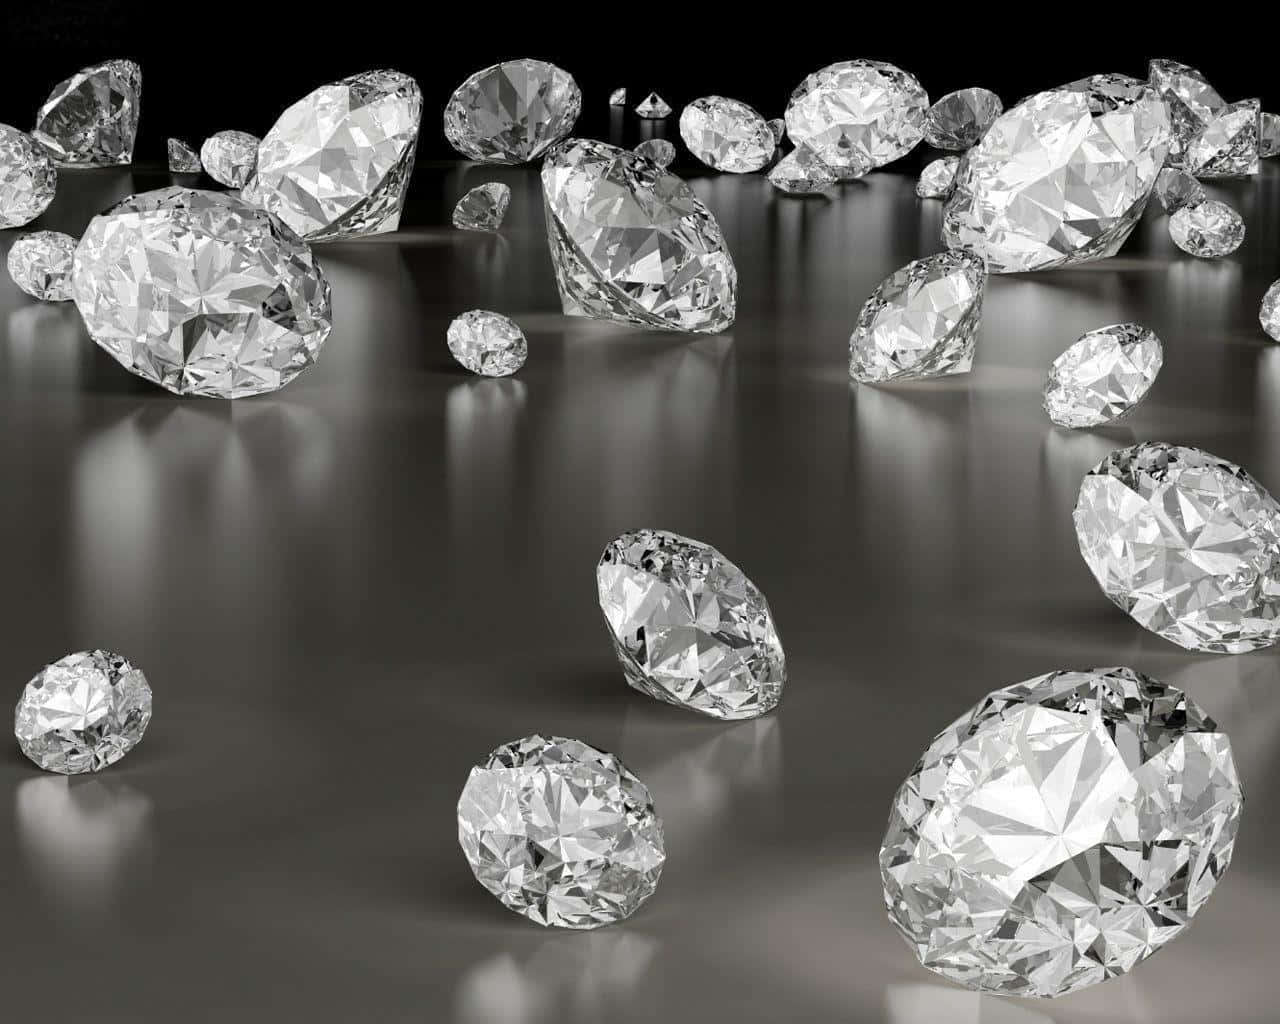 A glamorous diamond background, sparkling like a thousand jewels.